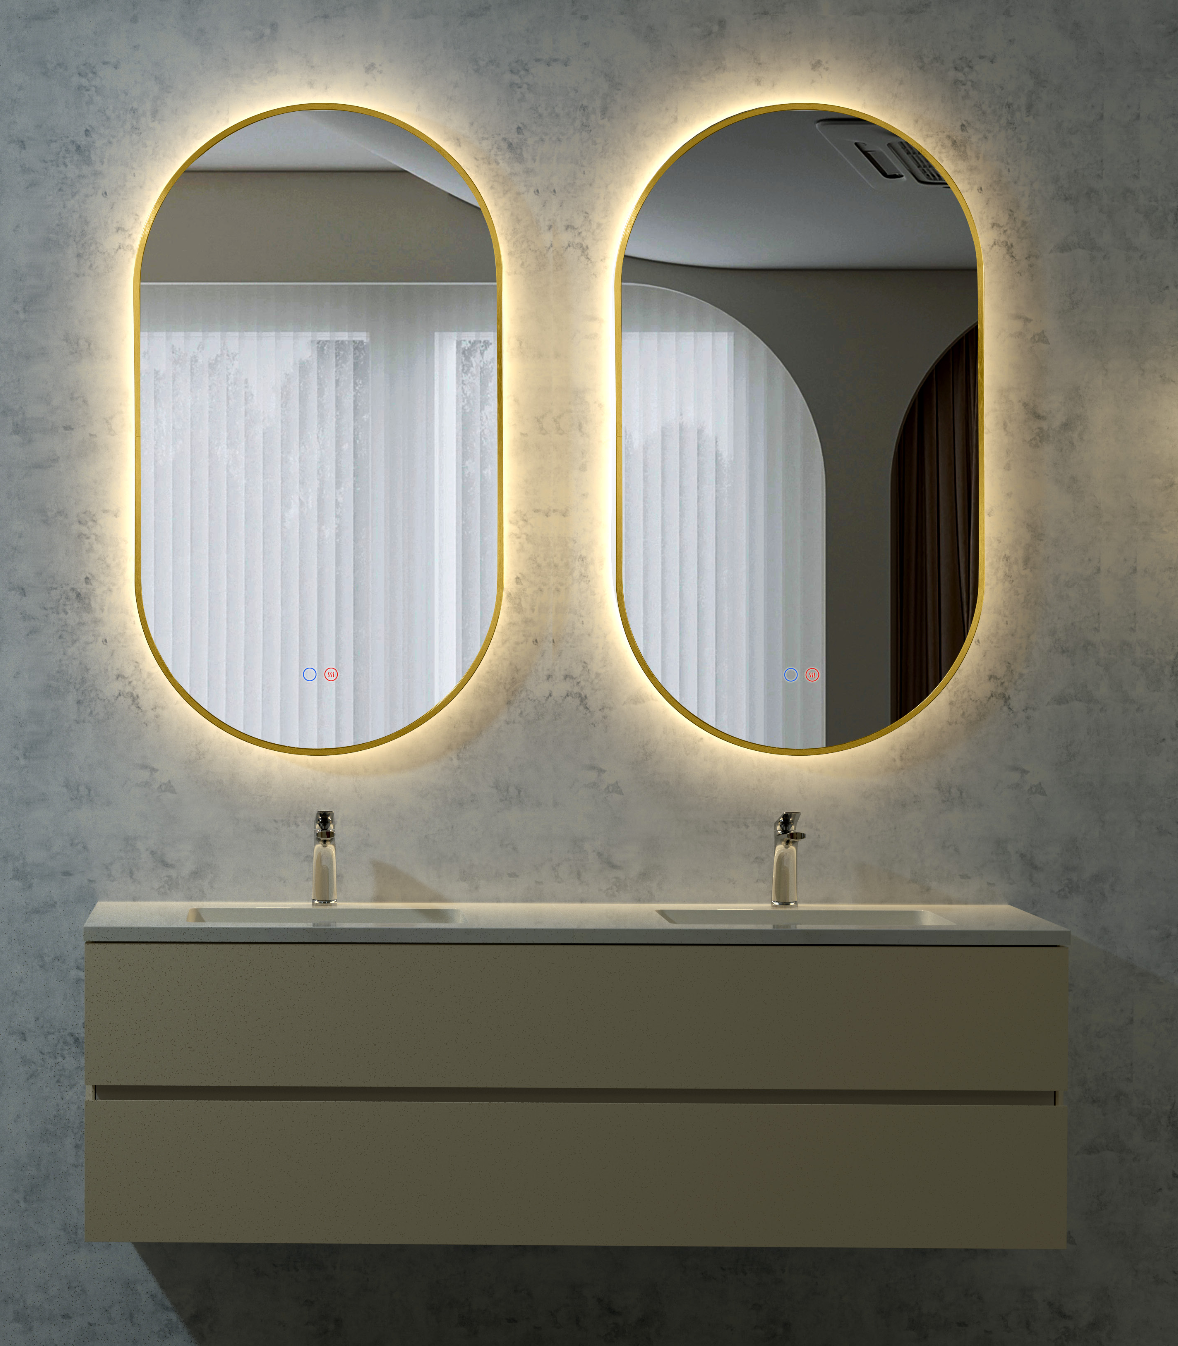 Tokyo backlit elliptical bathroom mirror by Ledimex in Industrial style